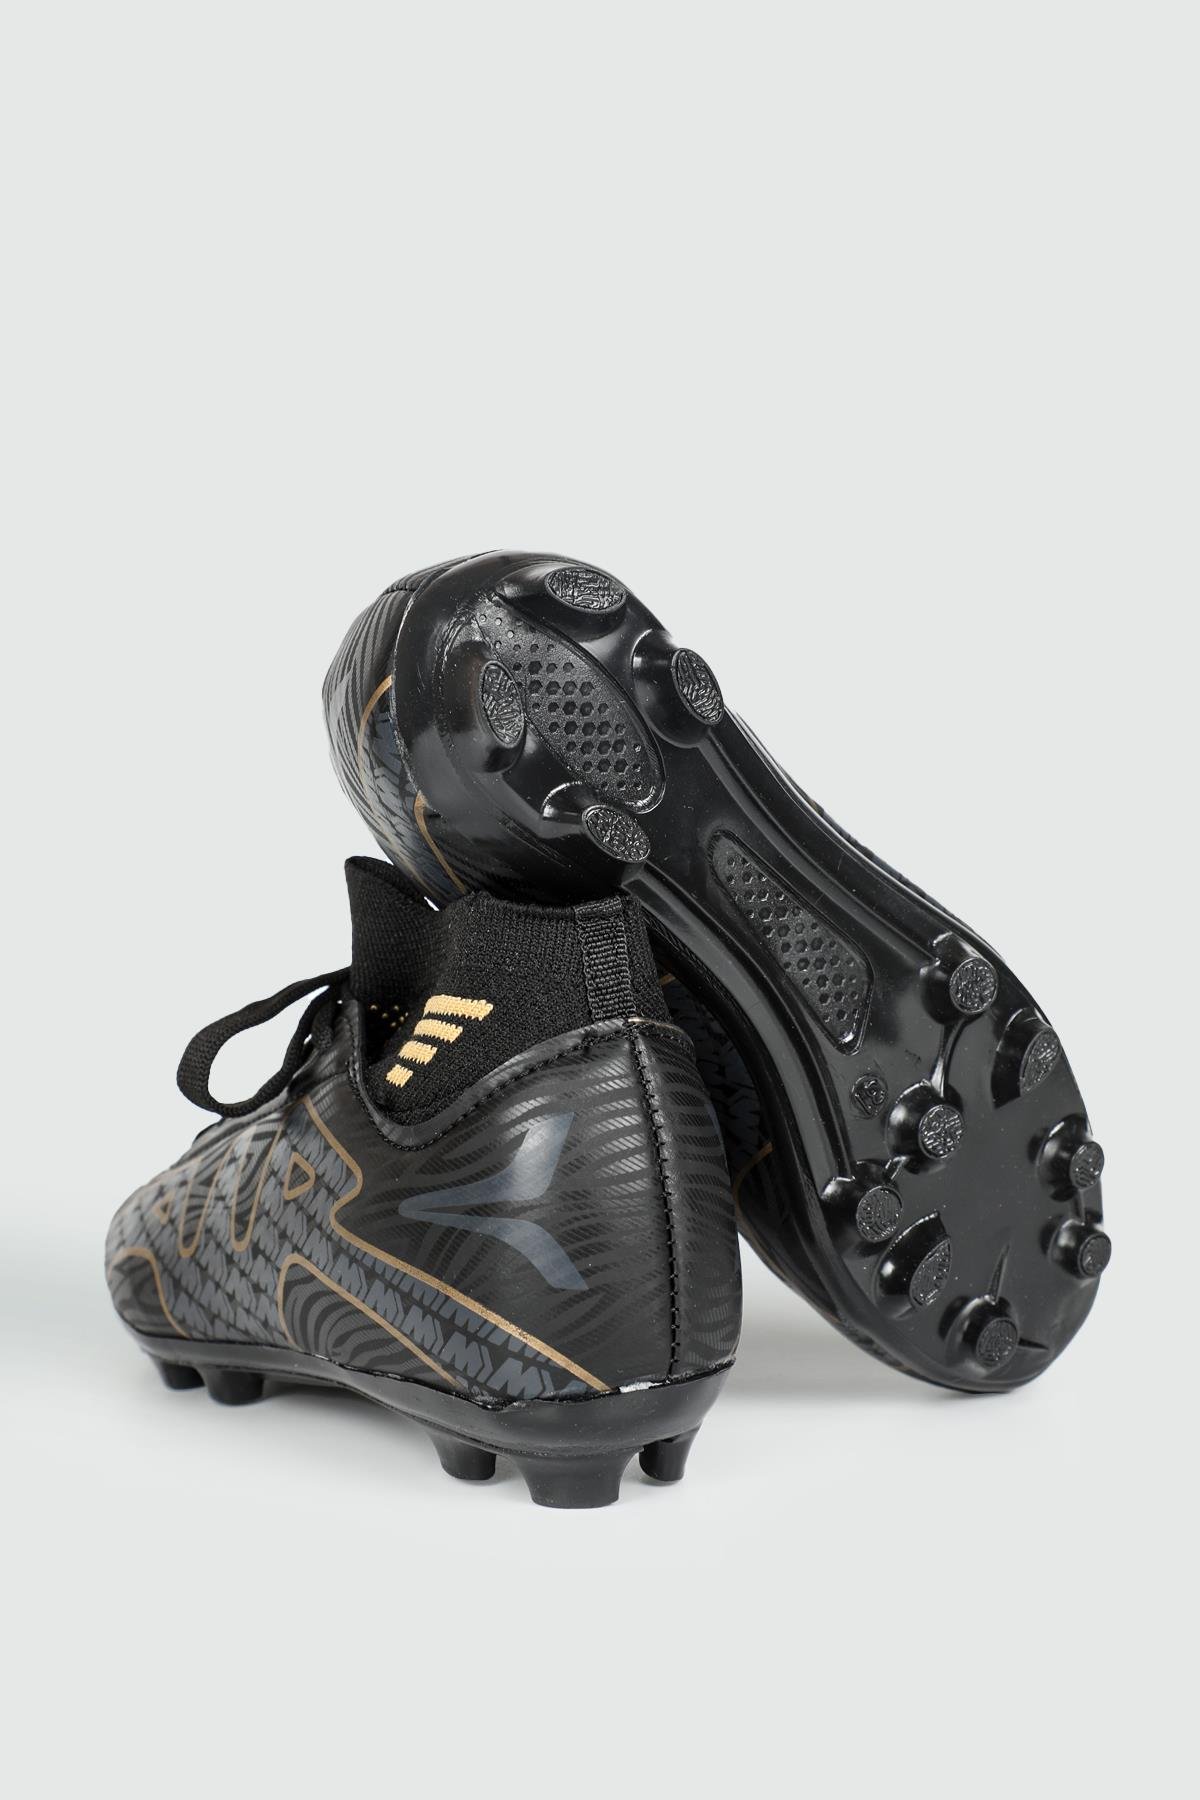 Twingo Çoraplı Krampon Siyah Altın Çocuk Spor Ayakkabı TWNG360 | Ayakkabı  City